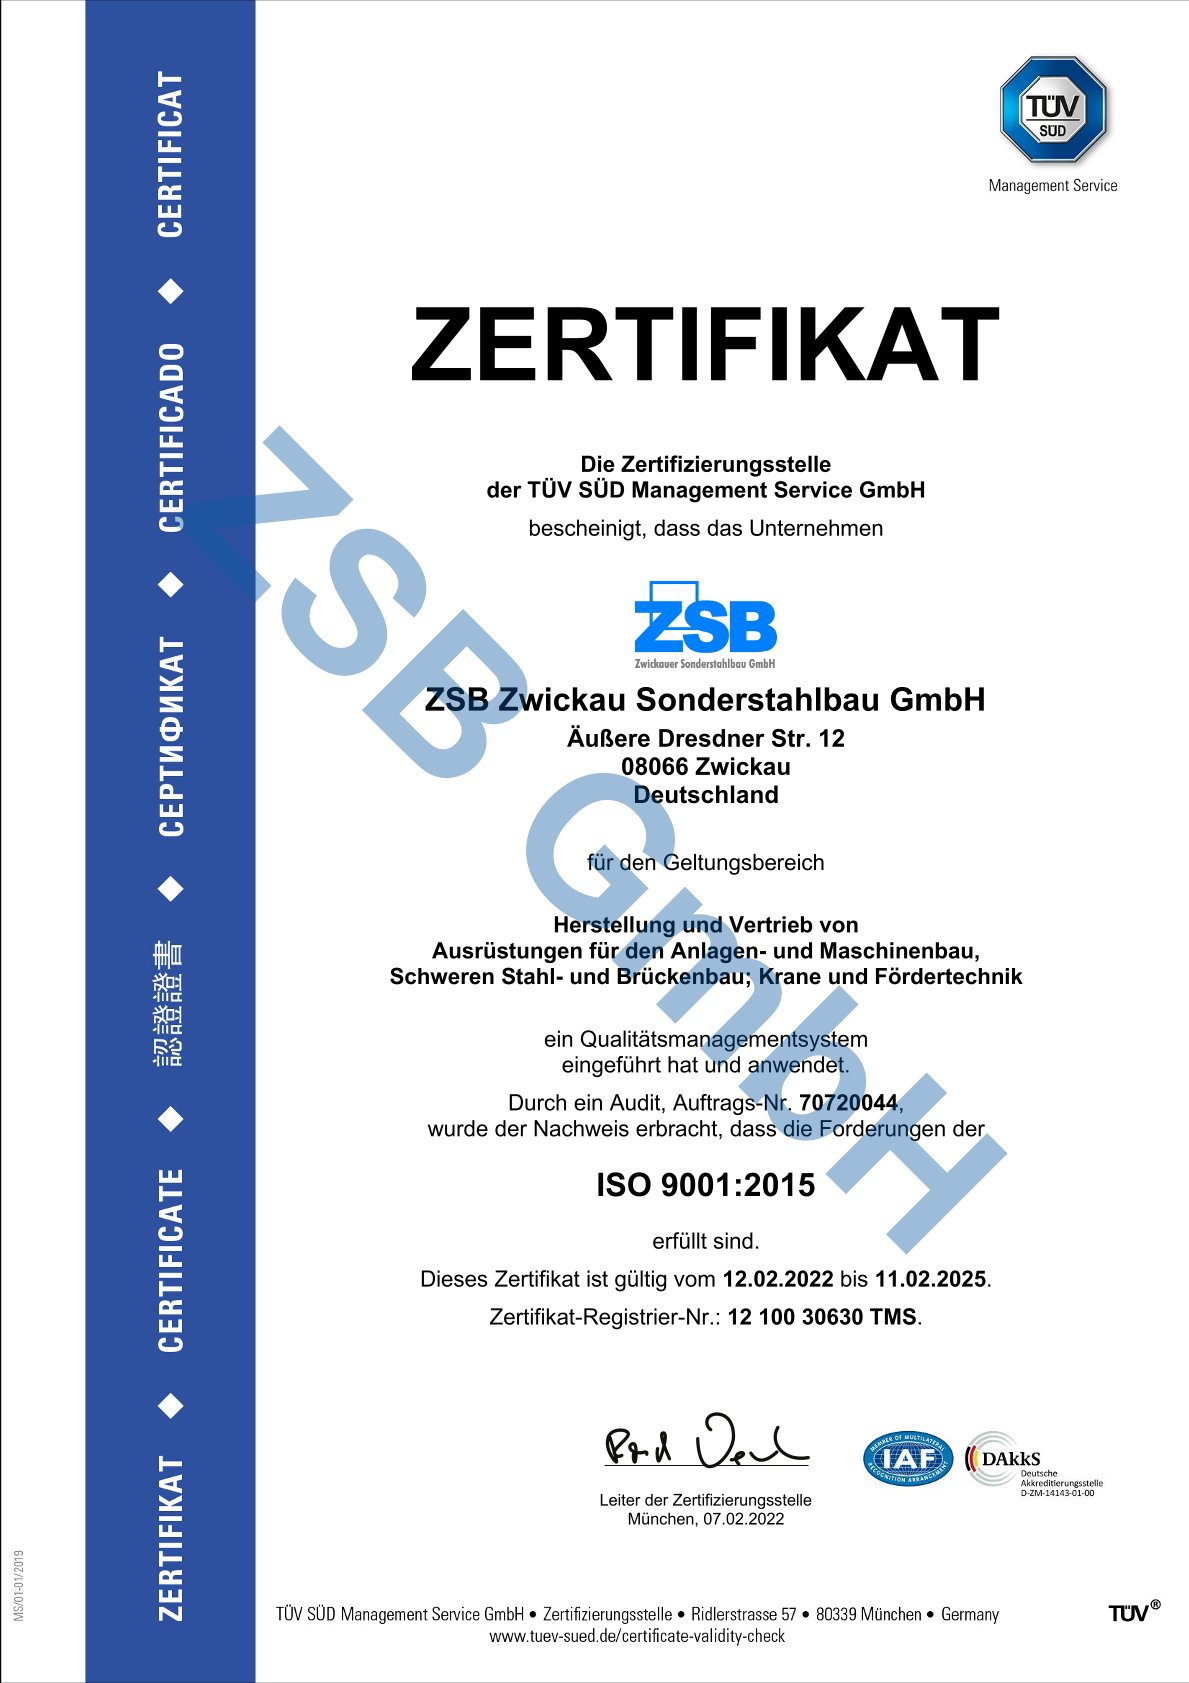 QM Schweißen ISO 3834-2